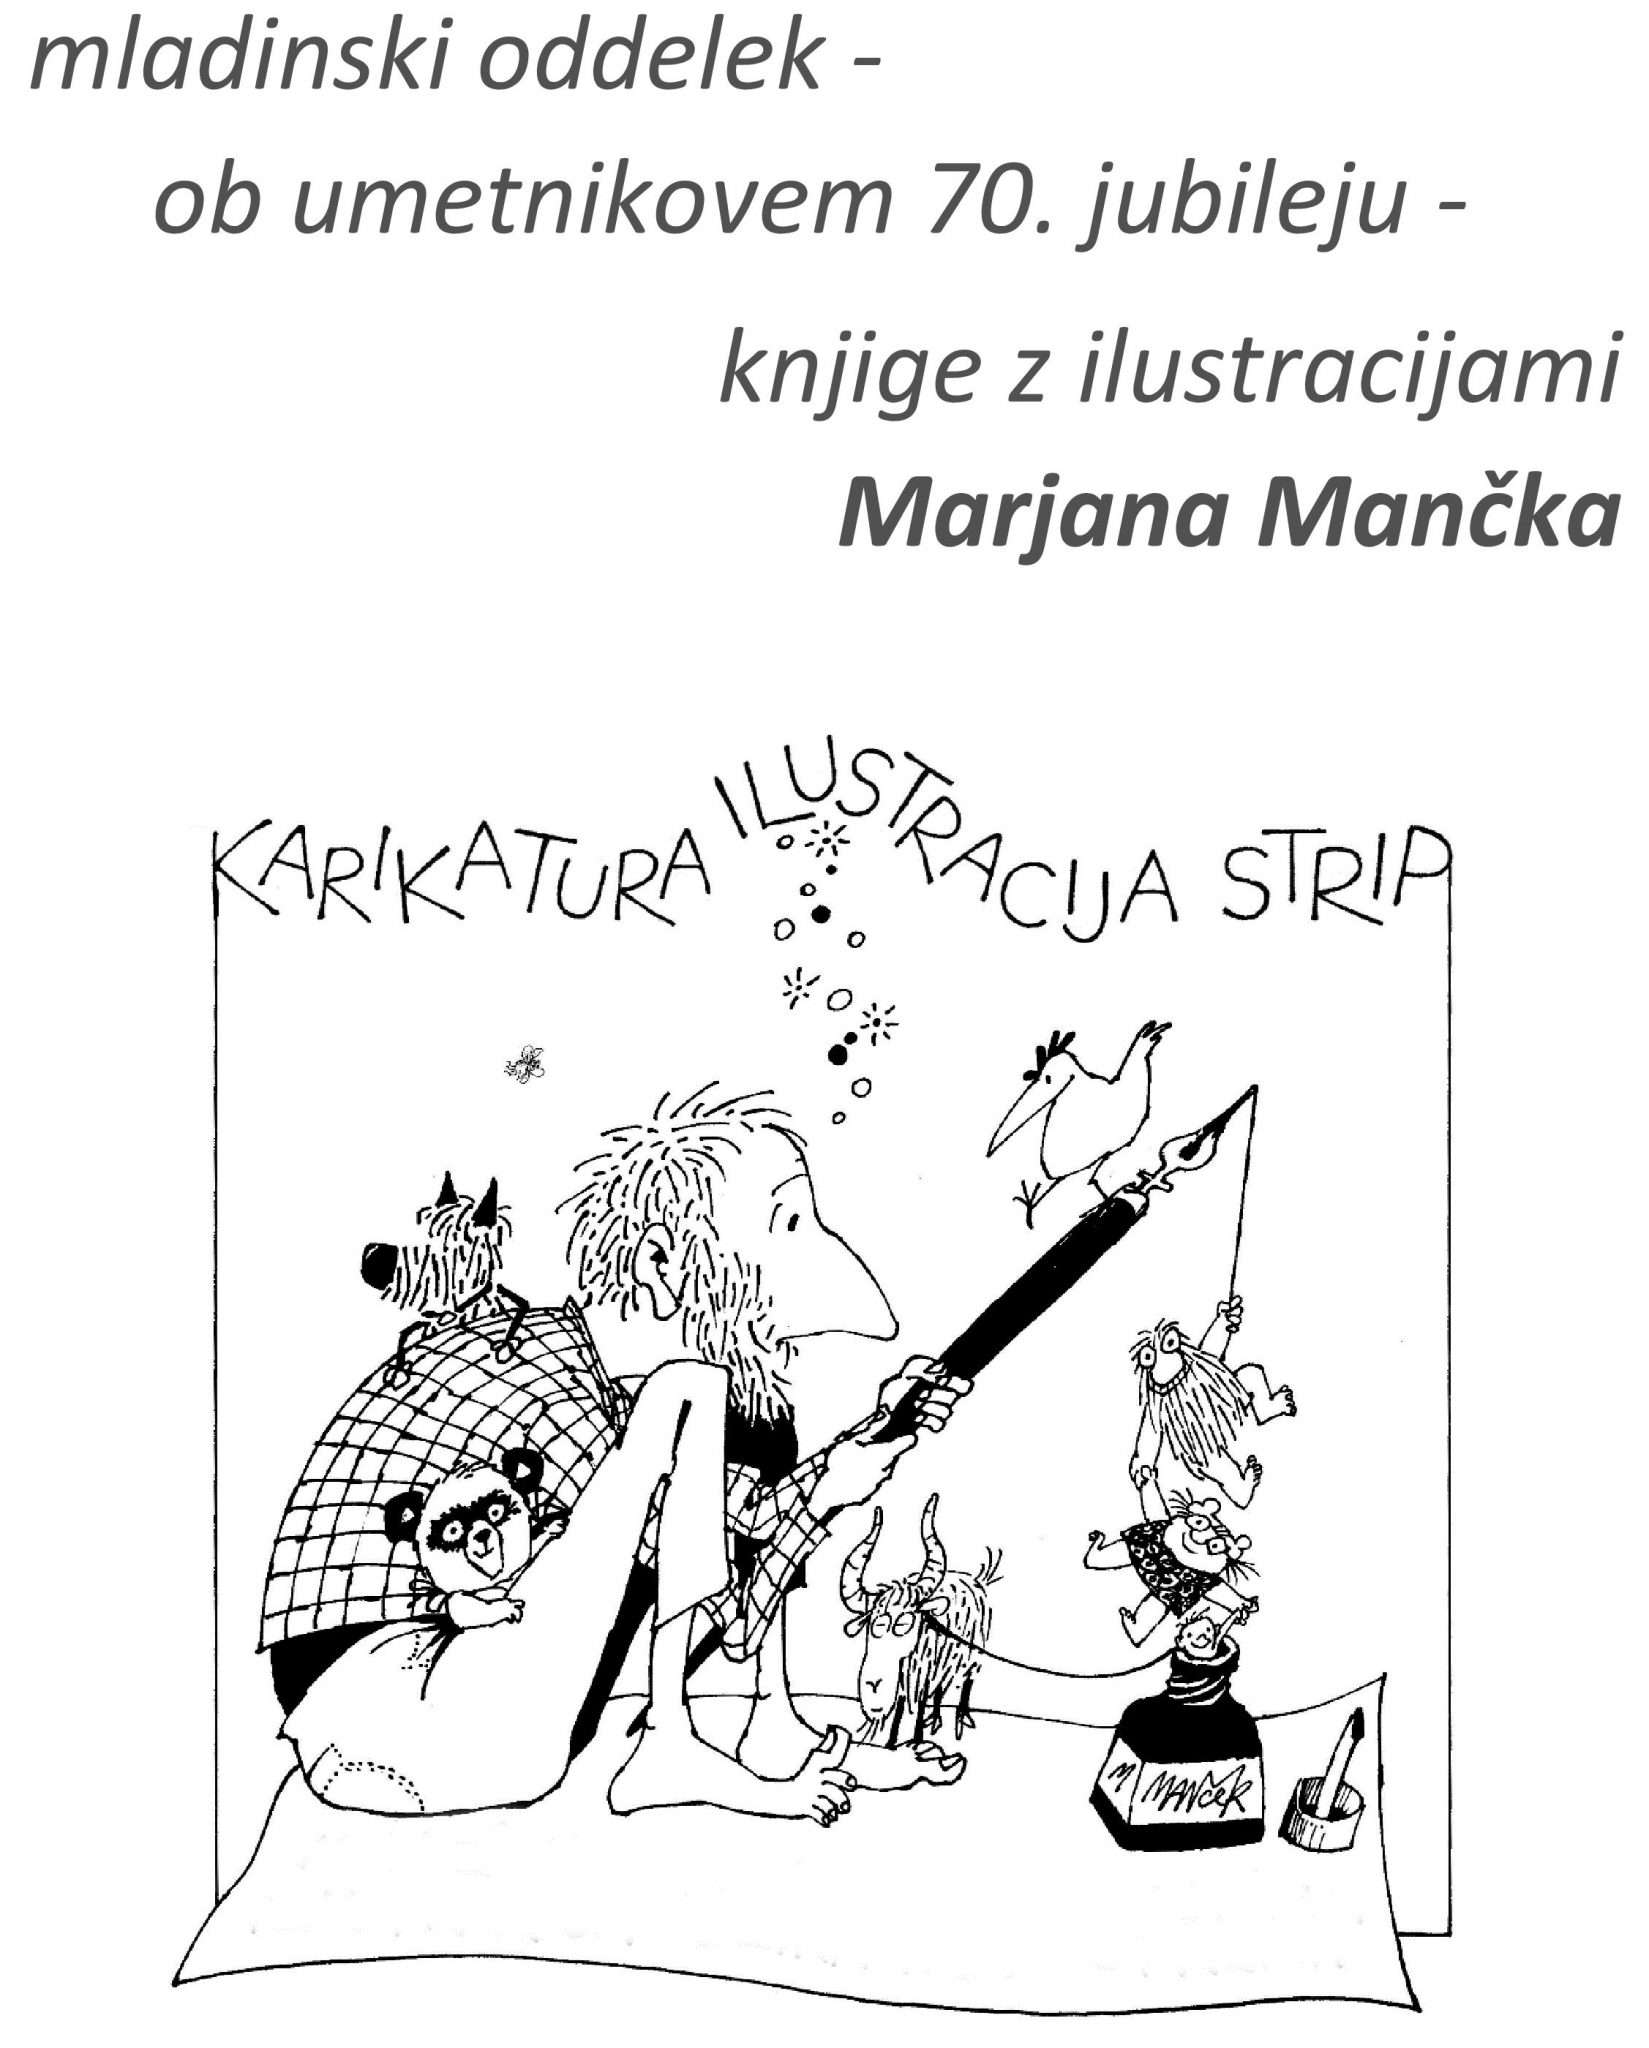 cover 12 - Razstava knjig z ilustracijami Marjana Mančka